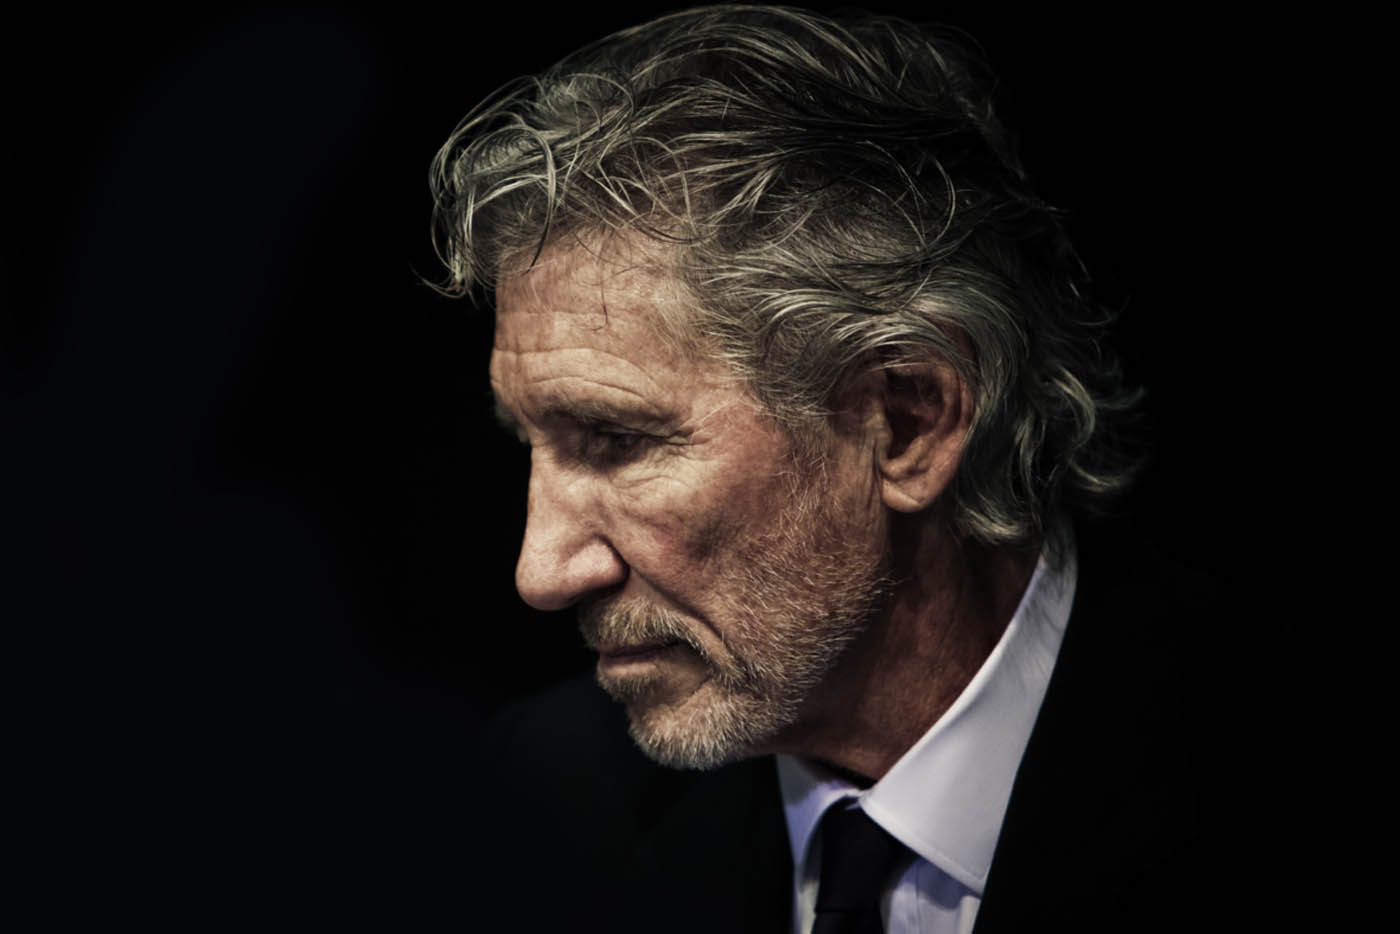 Yelmo Cines estrena dos conciertos de Roger Waters y Metallica